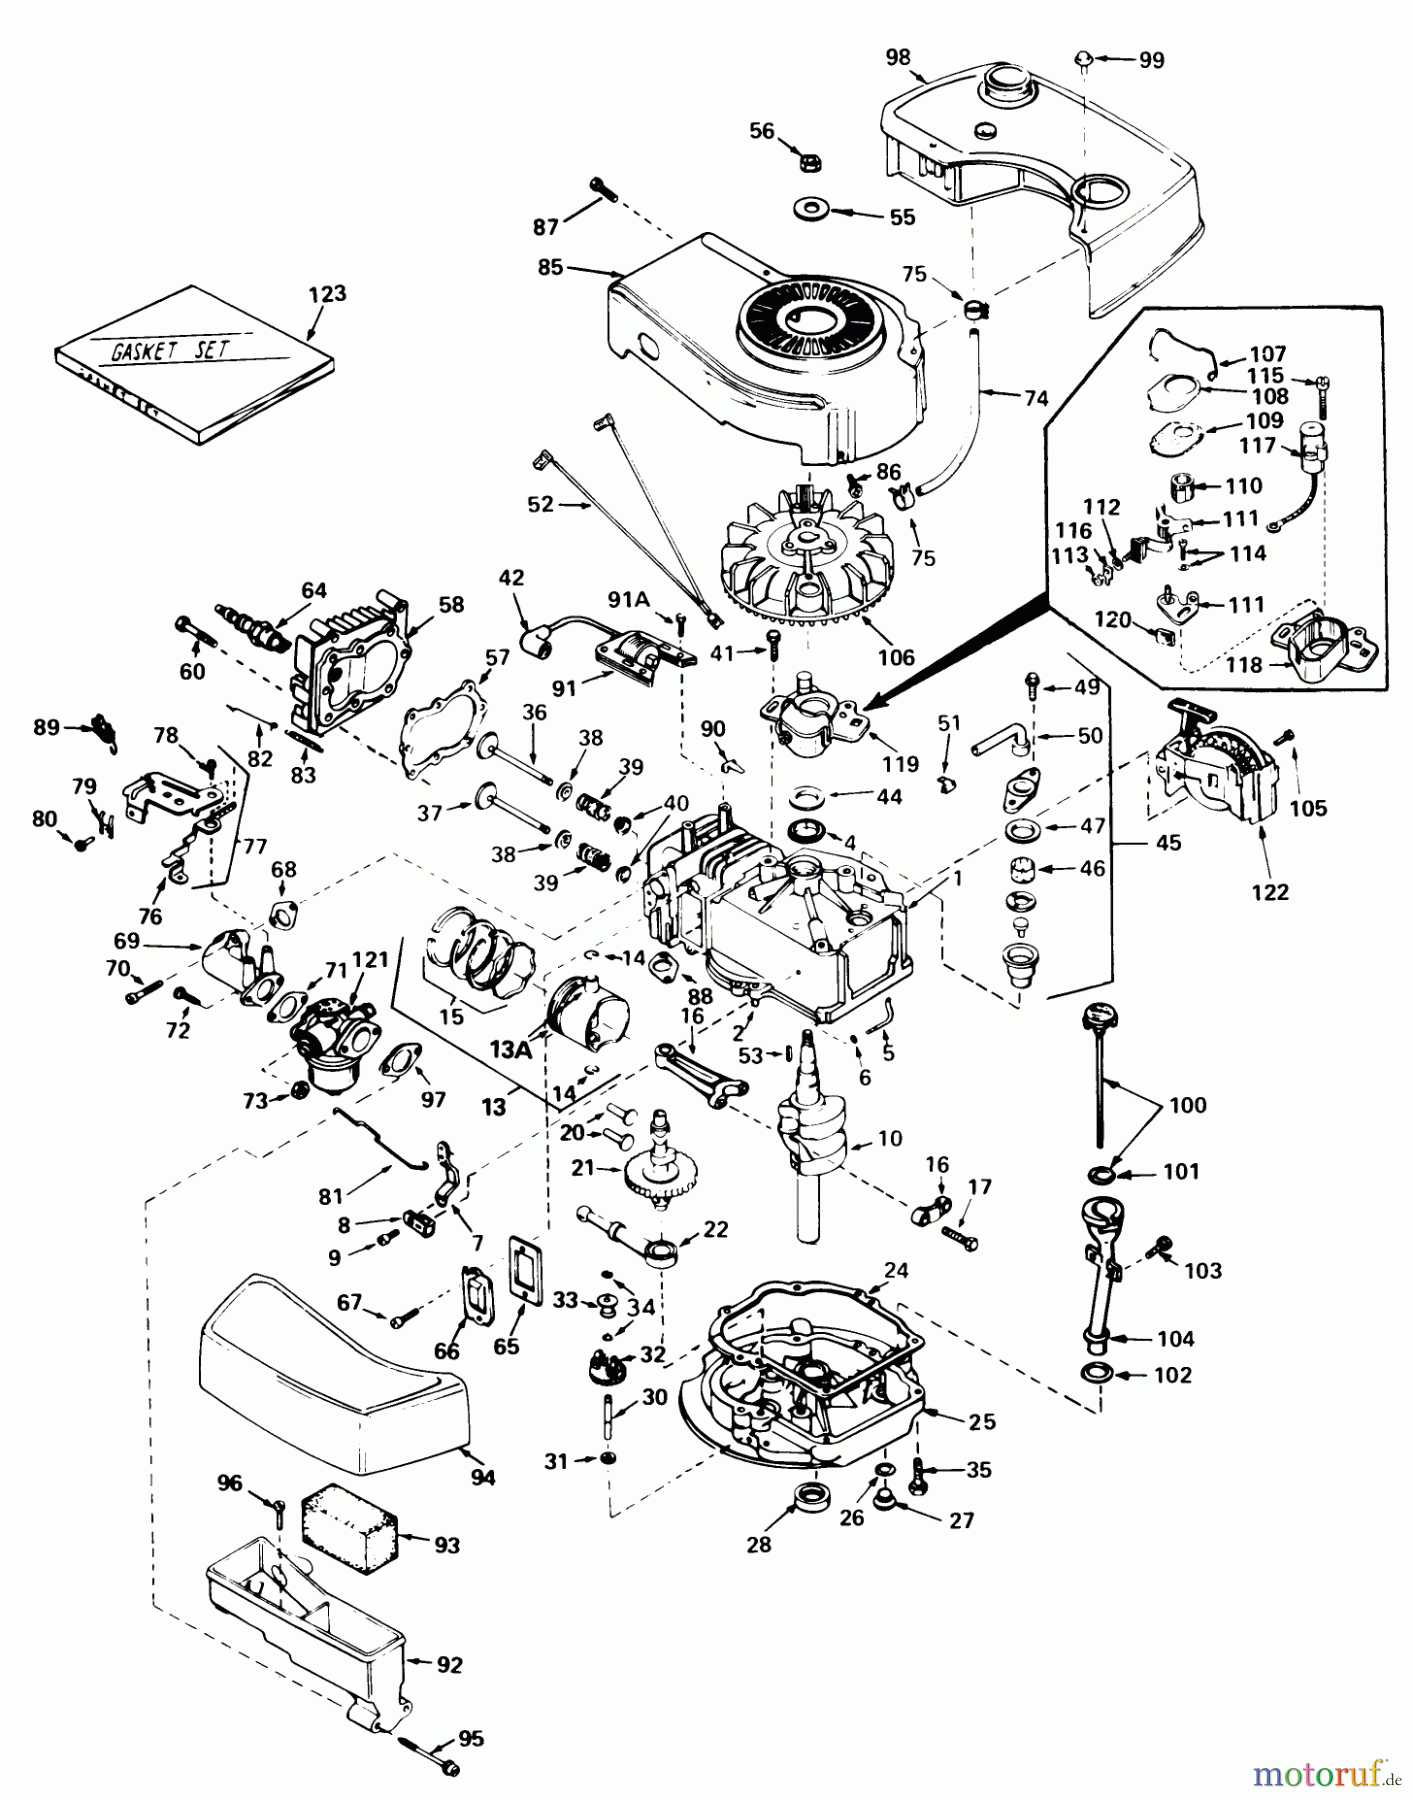  Toro Neu Mowers, Walk-Behind Seite 1 20700 - Toro Lawnmower, 1980 (0000001-0999999) ENGINE TECUMSEH MODEL NO. TNT-100-10070C